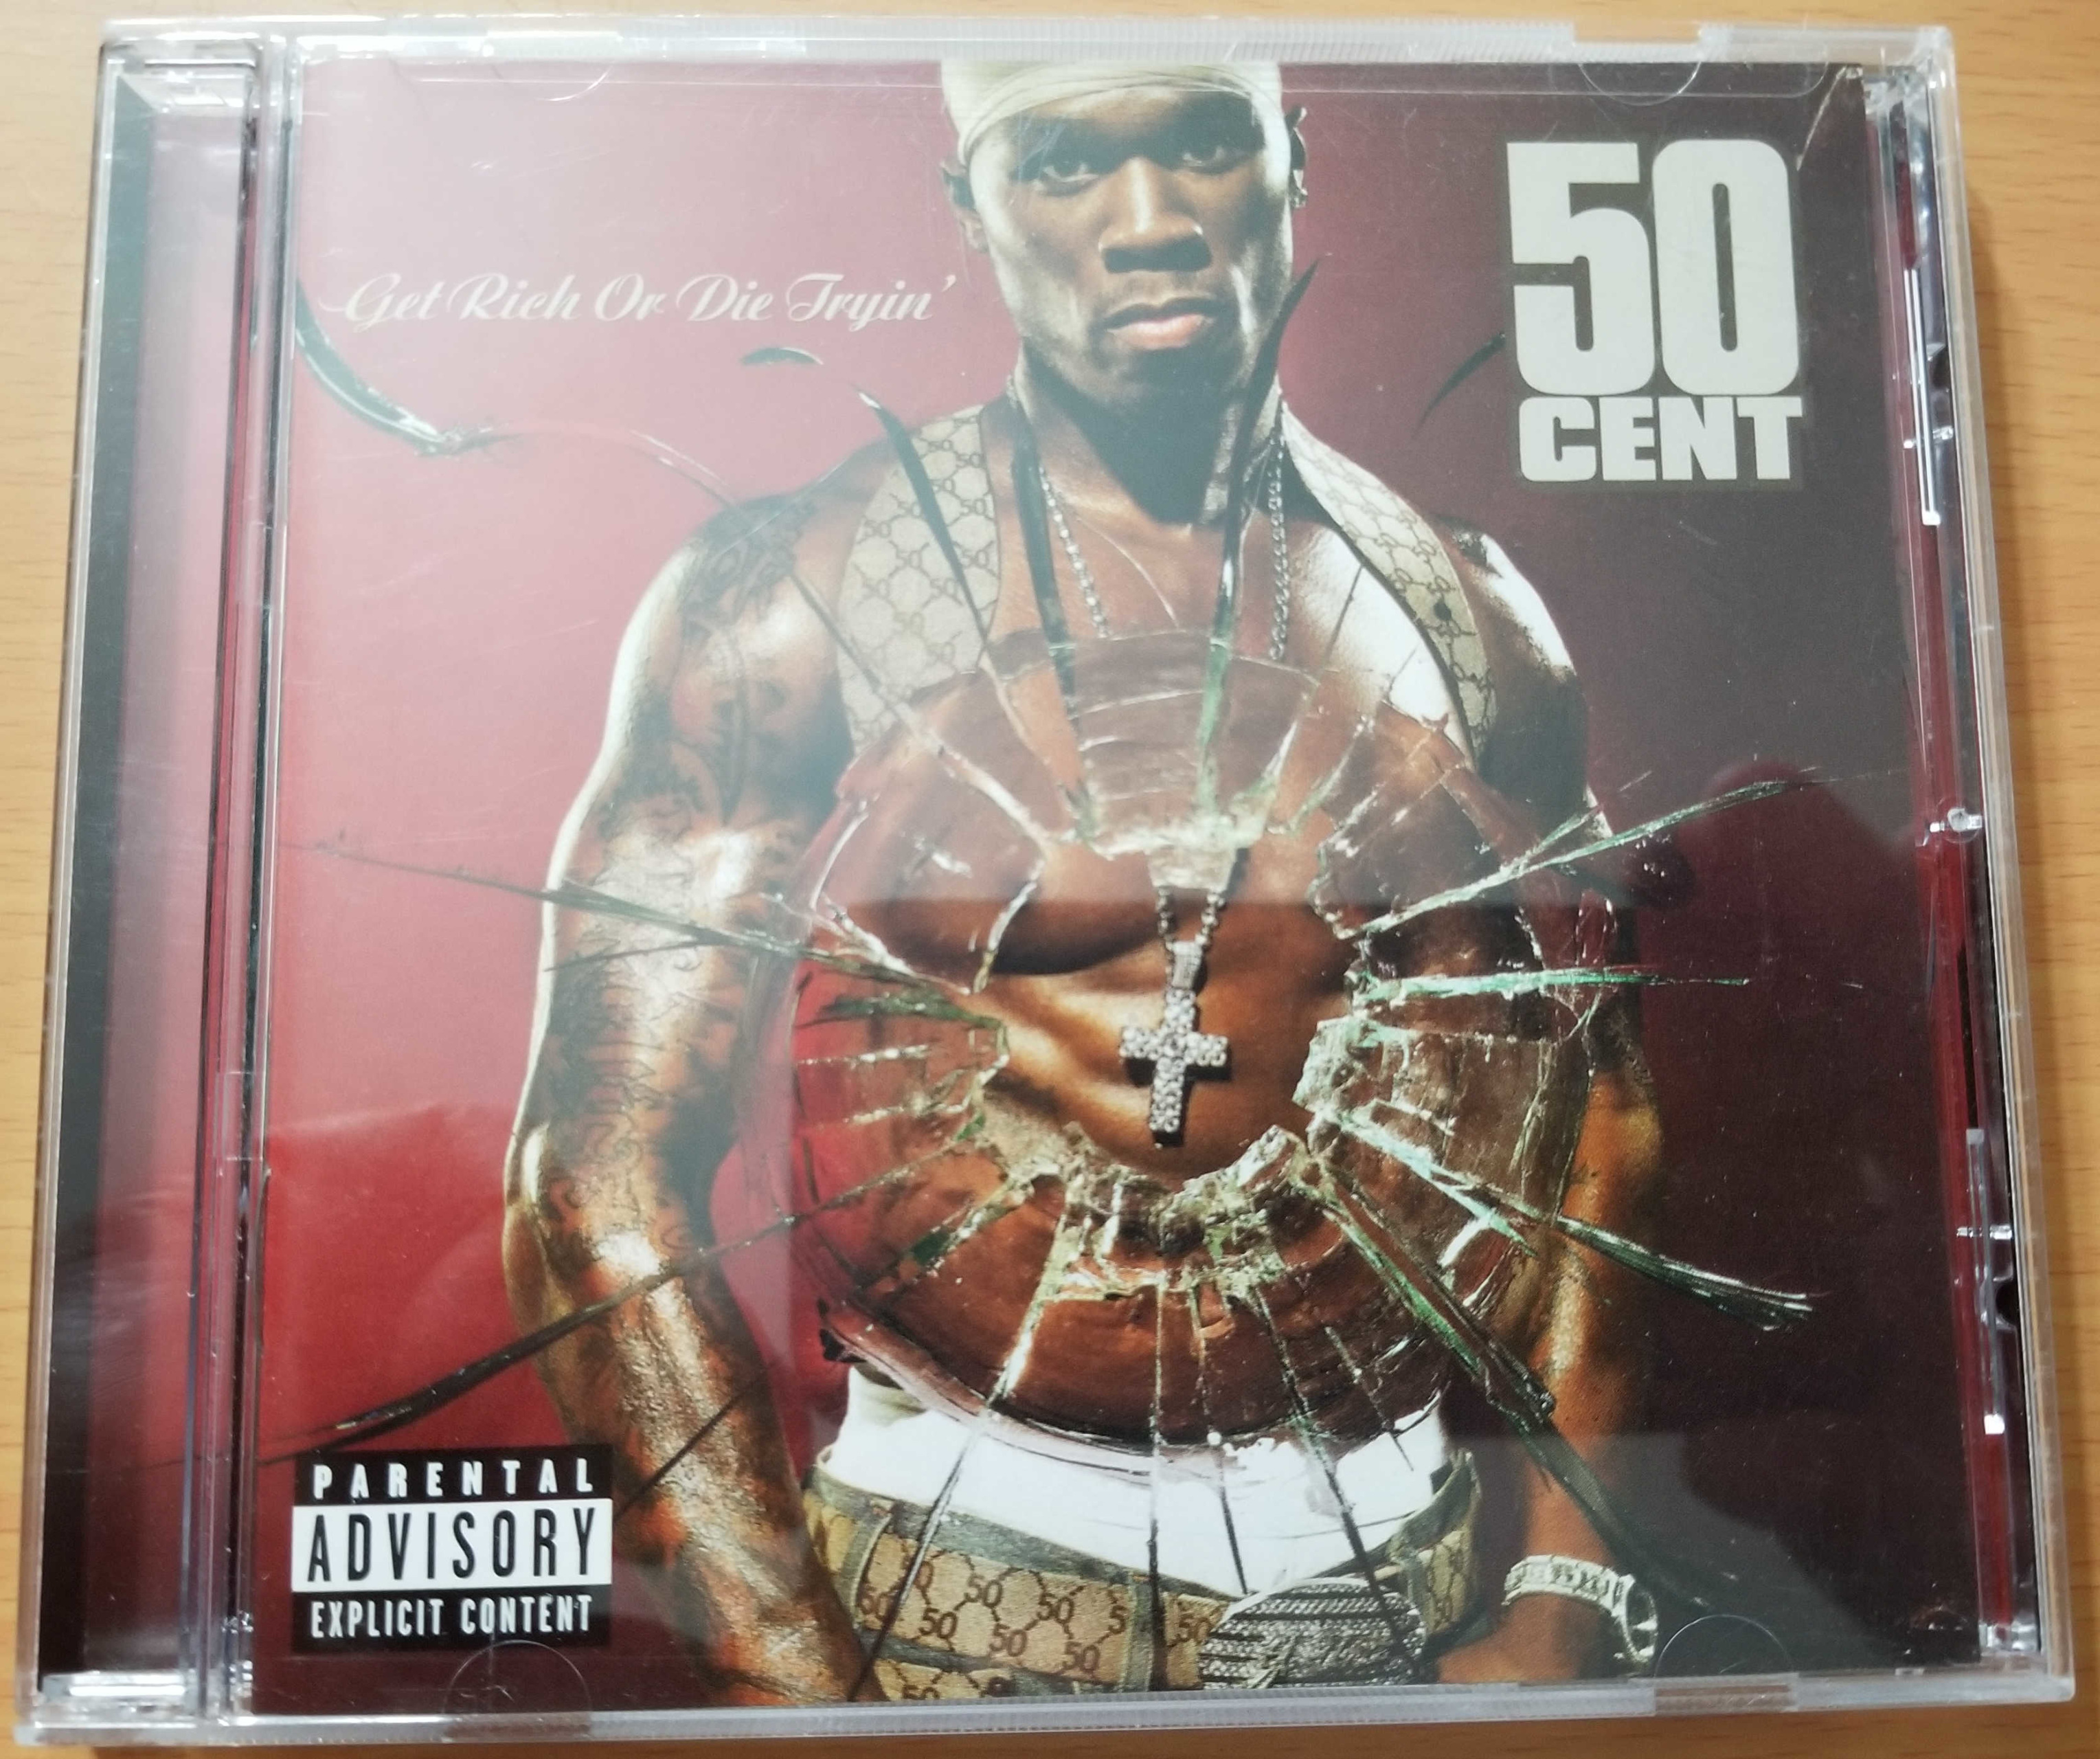 50 Cent - Get Rich or Die Tryin' CD Album